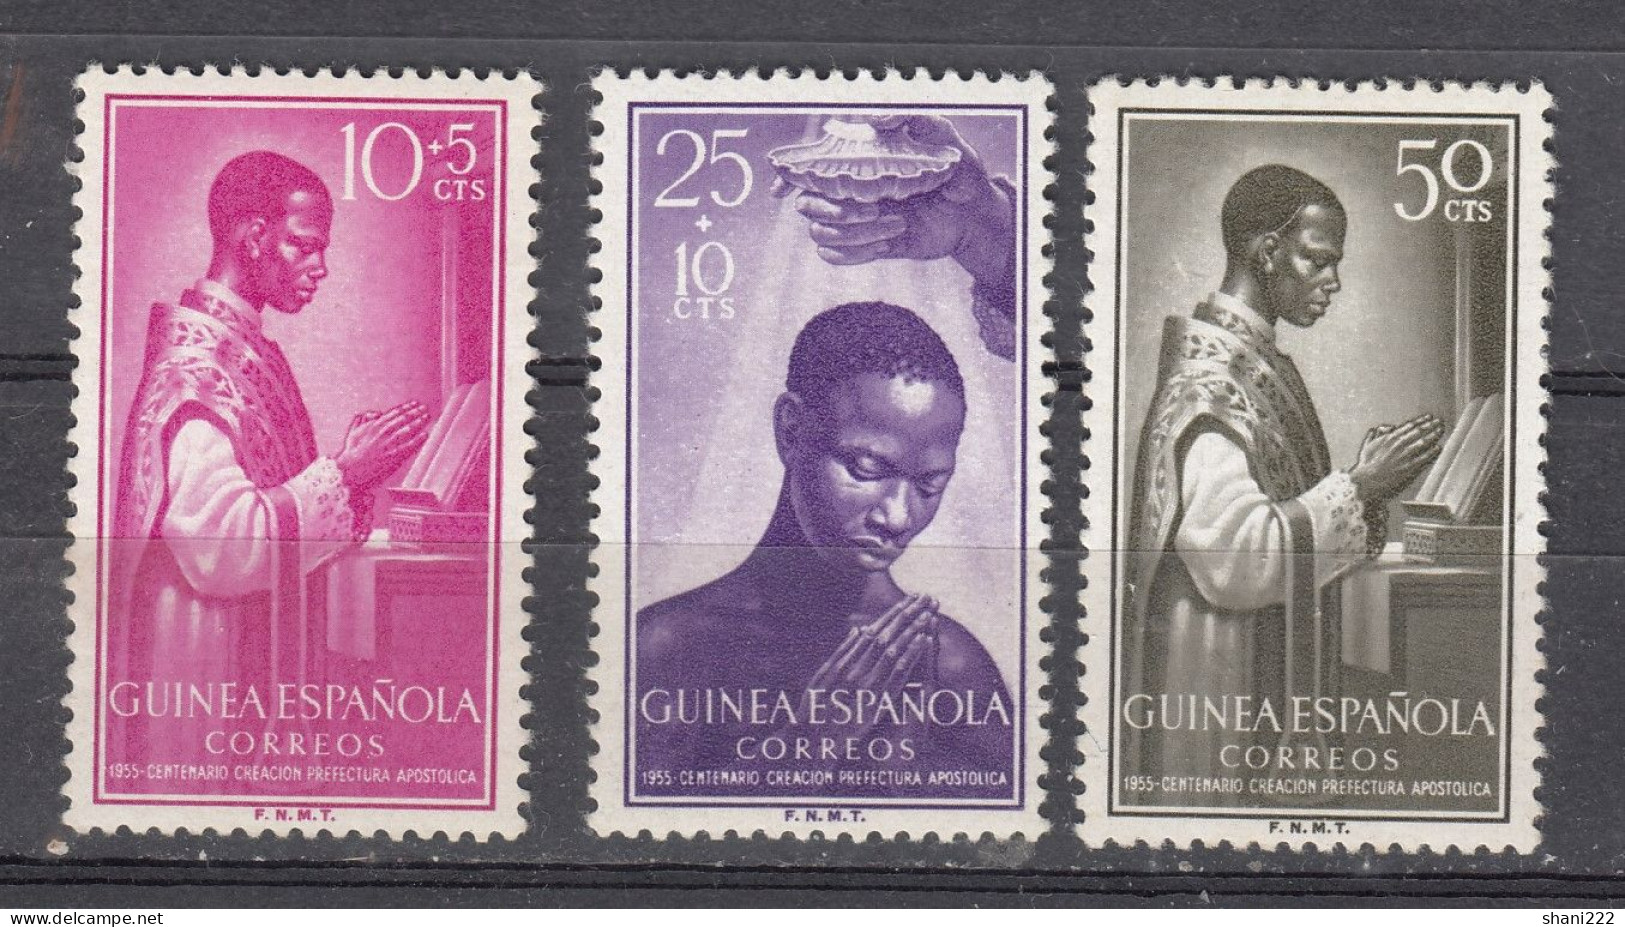 Spanish Guinea - 1955 Prefectura Apostolica - MNH (e-812) - Guinea Española